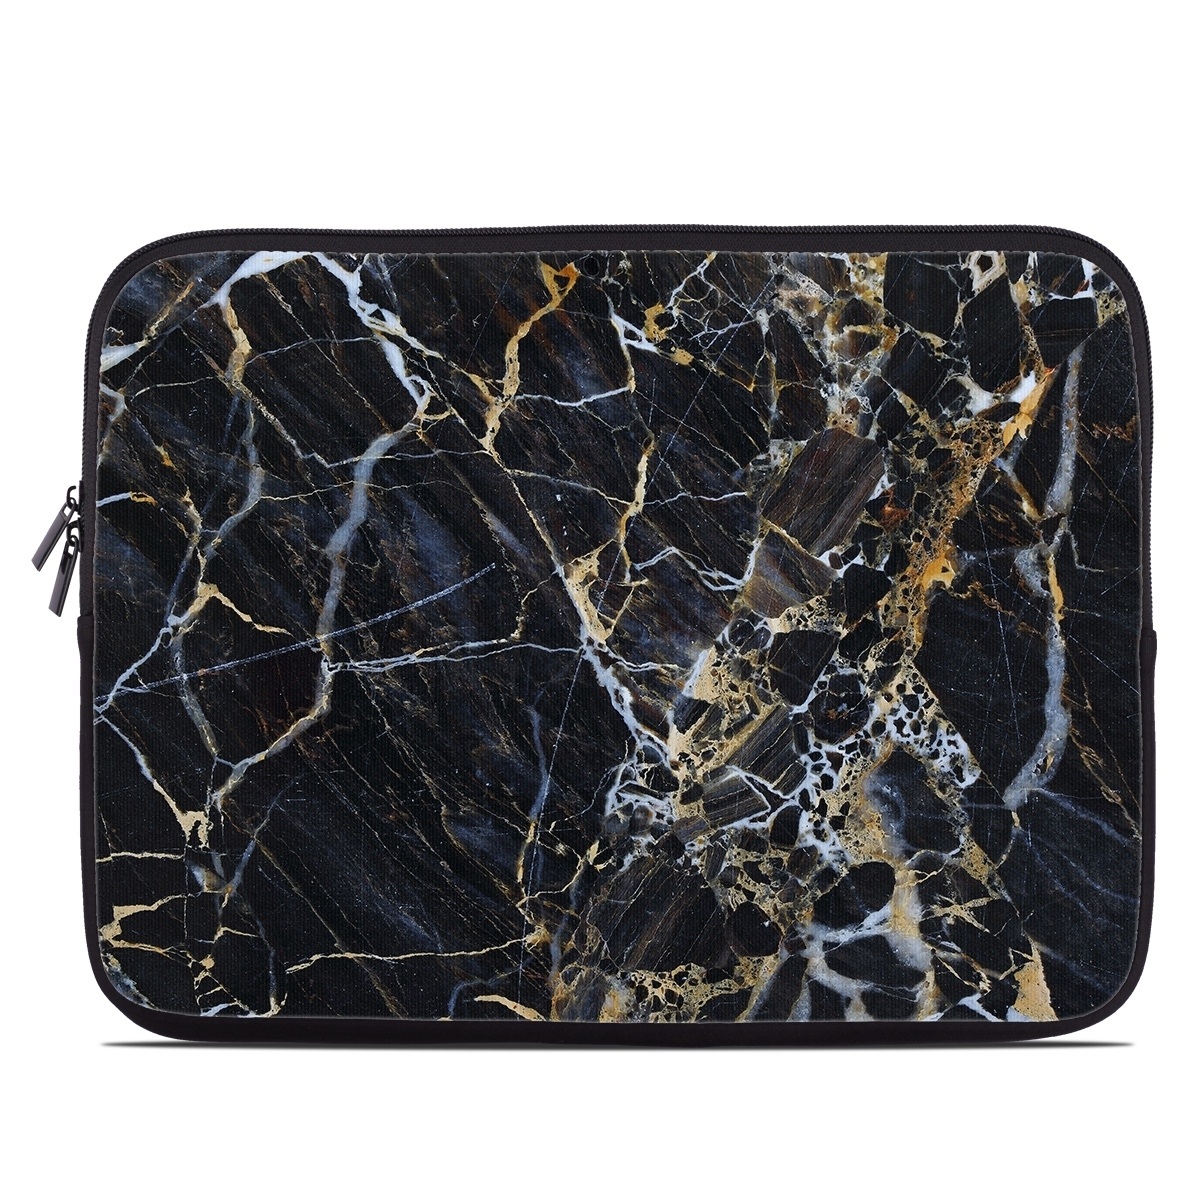 Laptop Sleeve - Dusk Marble (Image 1)